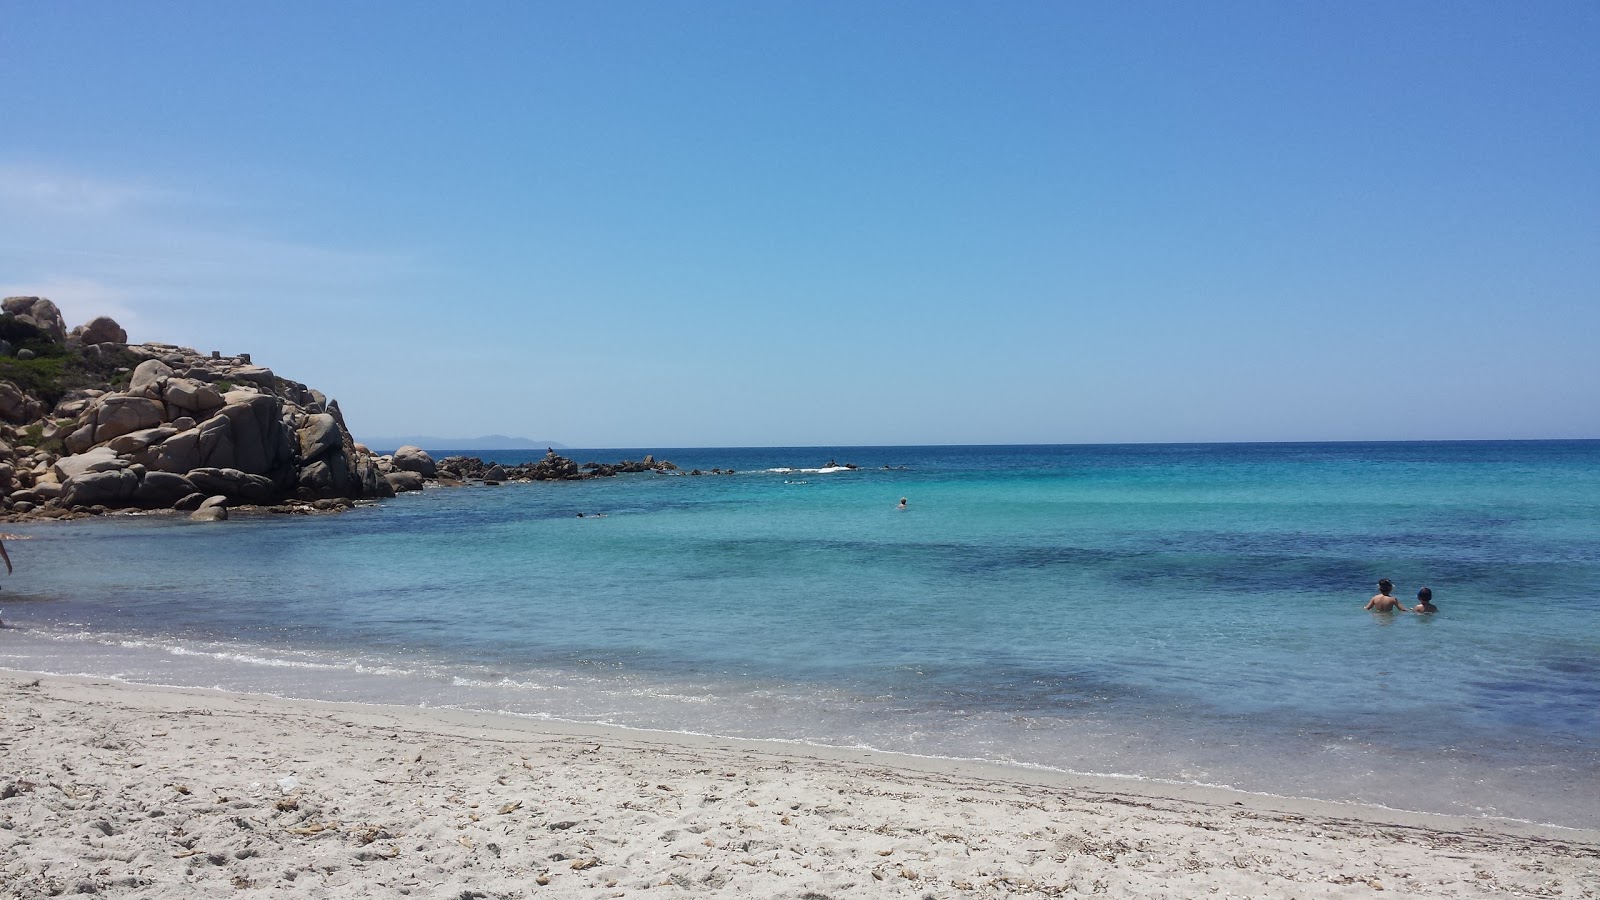 Foto van Spiaggia Santa Reparata met gemiddeld niveau van netheid